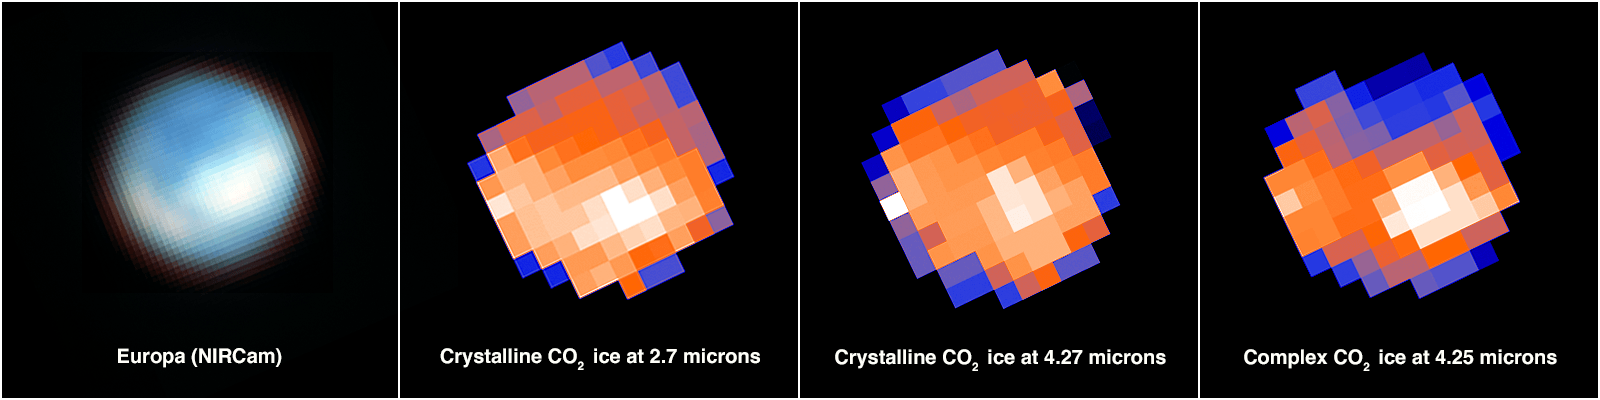 In den Karten entsprechen die weißen Pixel dem Kohlendioxid in der Tara Regio (Mitte und rechts), mit zusätzlichen Konzentrationen in Teilen der Chaos-Region Powys Regio (links). Die zweite und dritte Tafel zeigen Anzeichen für kristallines Kohlendioxid, während die vierte Tafel eine komplexierte und amorphe Form von Kohlendioxid anzeigt.